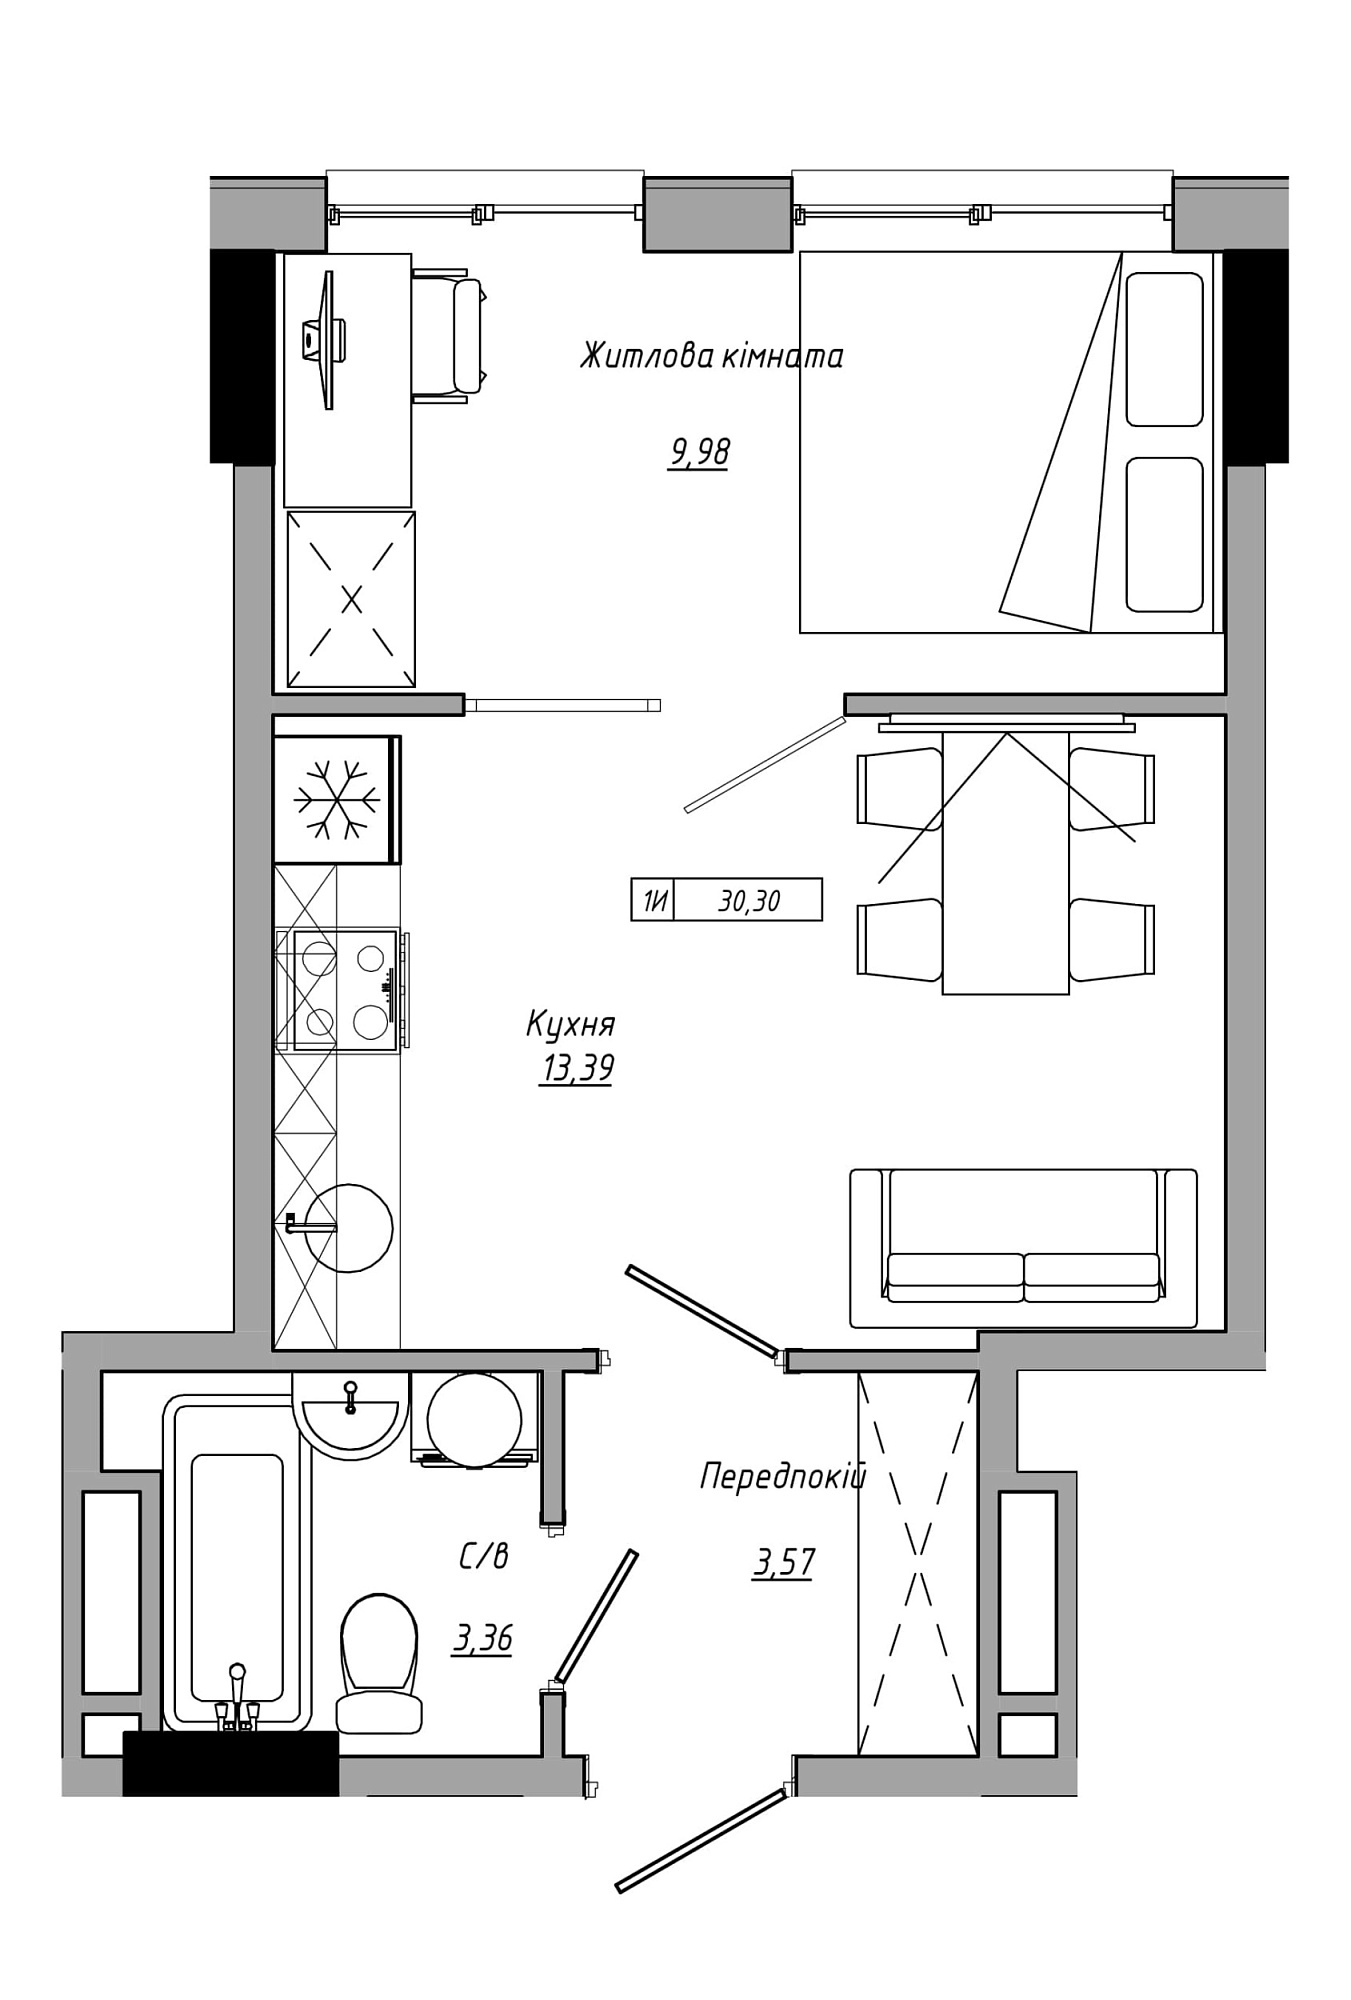 Планировка 1-к квартира площей 30.3м2, AB-21-05/00012.